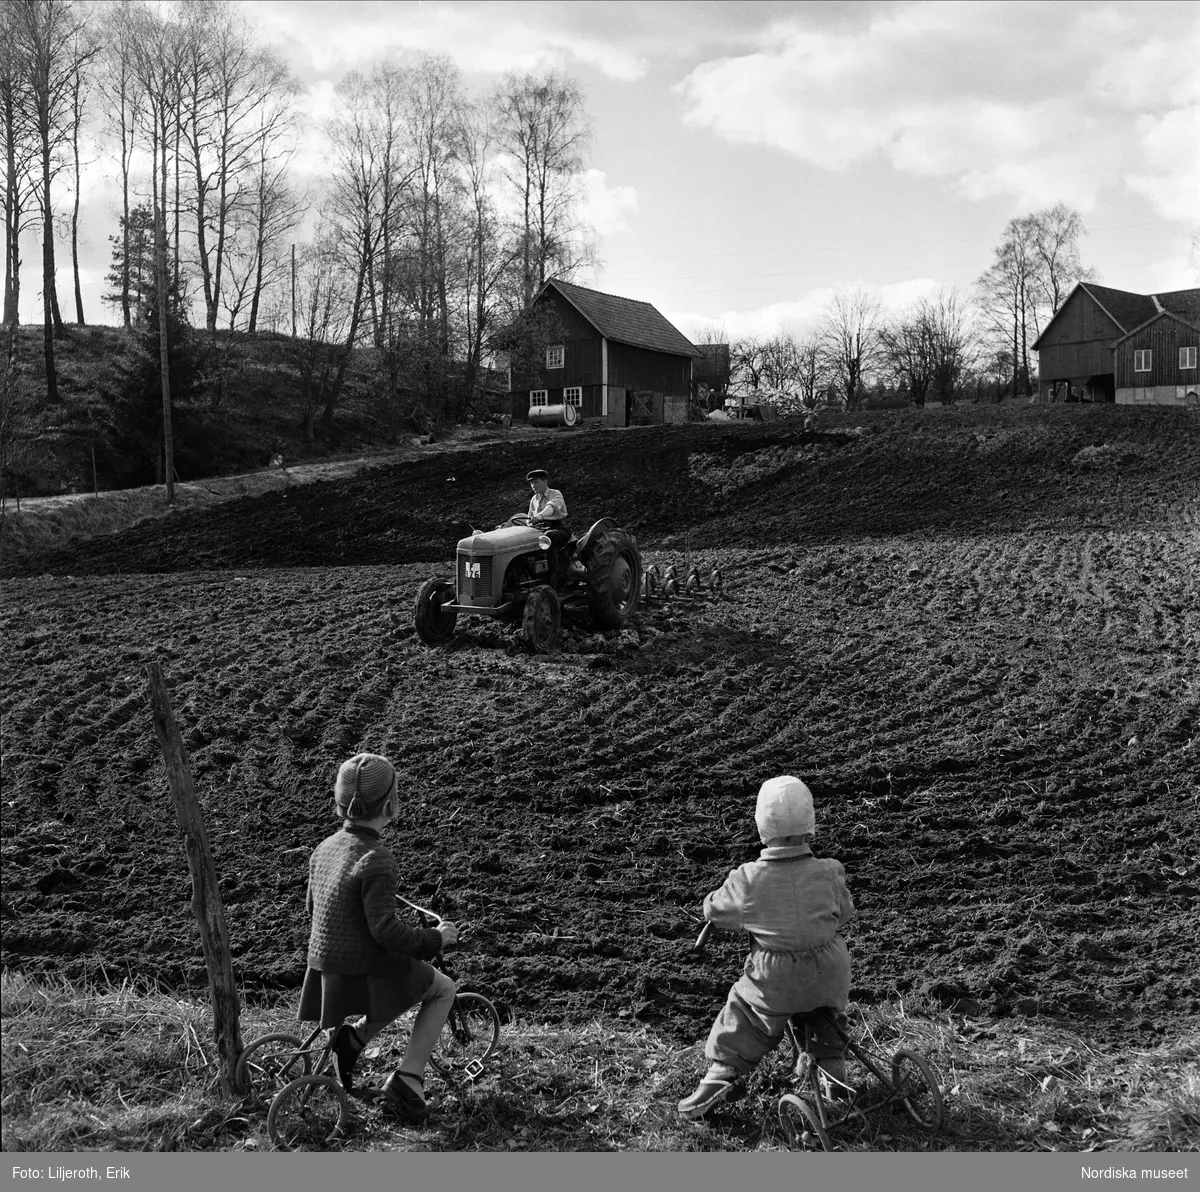 Vårbruk på en småländsk åker. En lantbrukare harvar med traktor (c-pinnharv). I förgrunden två små barn på varsin trehjuling.